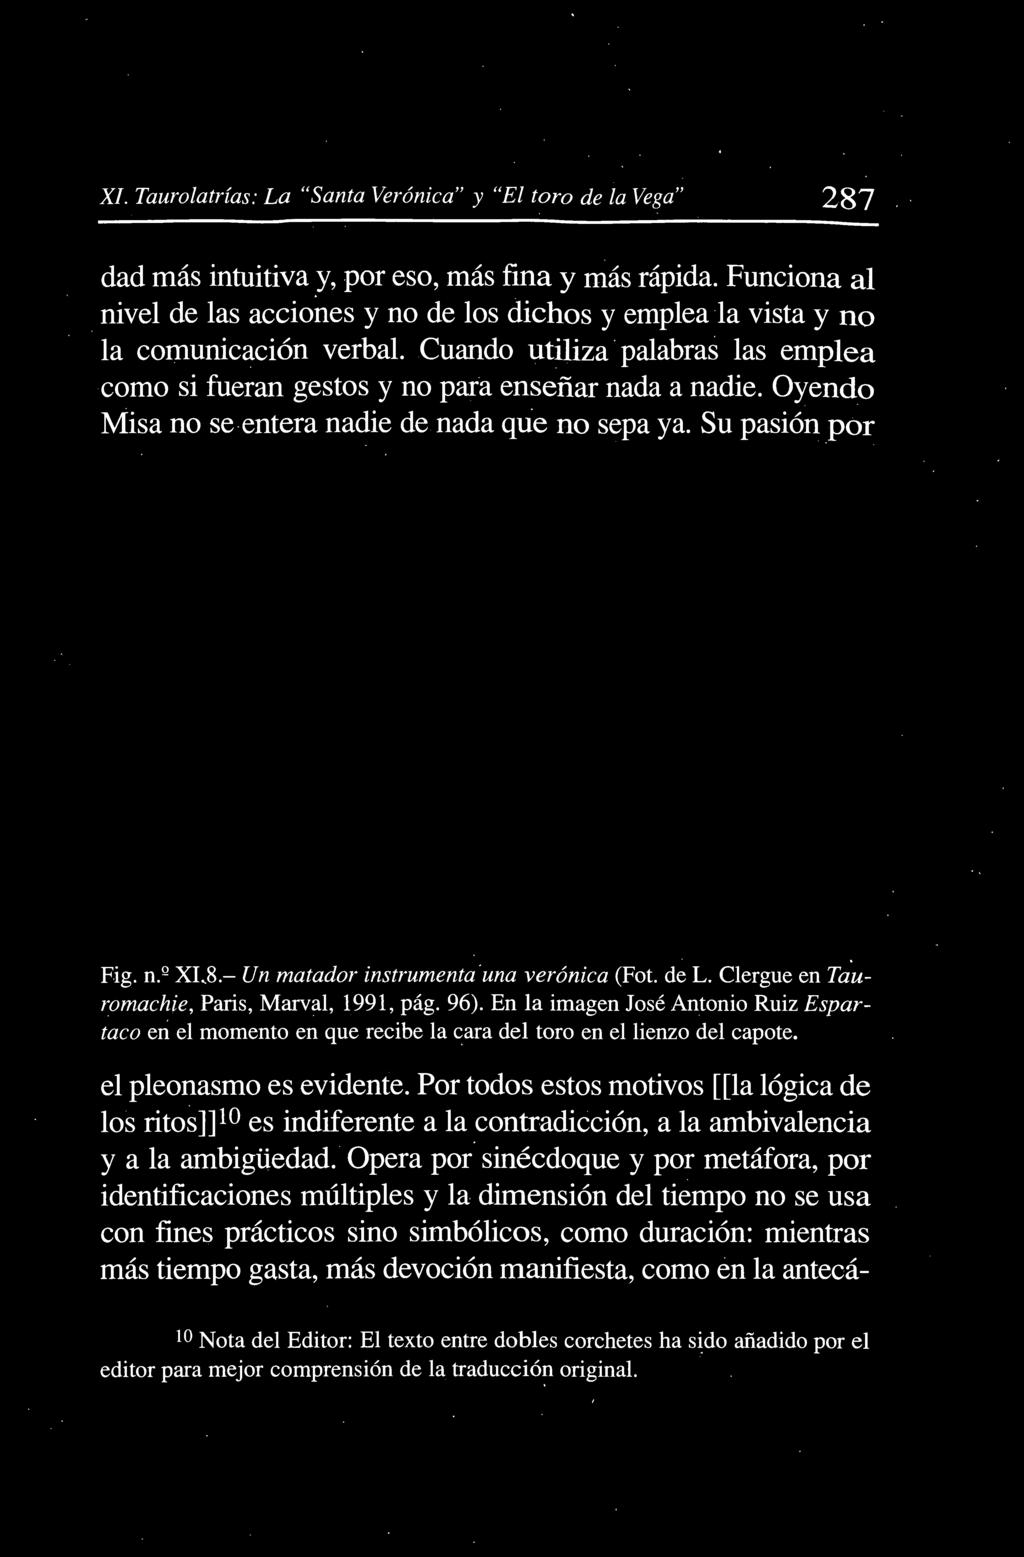 Oyendo Misa no se entera nadie de nada que no sepa ya. Su pasión por Fig. n.º XLS.- Un matador instrumenta una verónica (Fot. de L. Clergue en Ta uromachie, Paris, Marval, 1991, pág. 96).